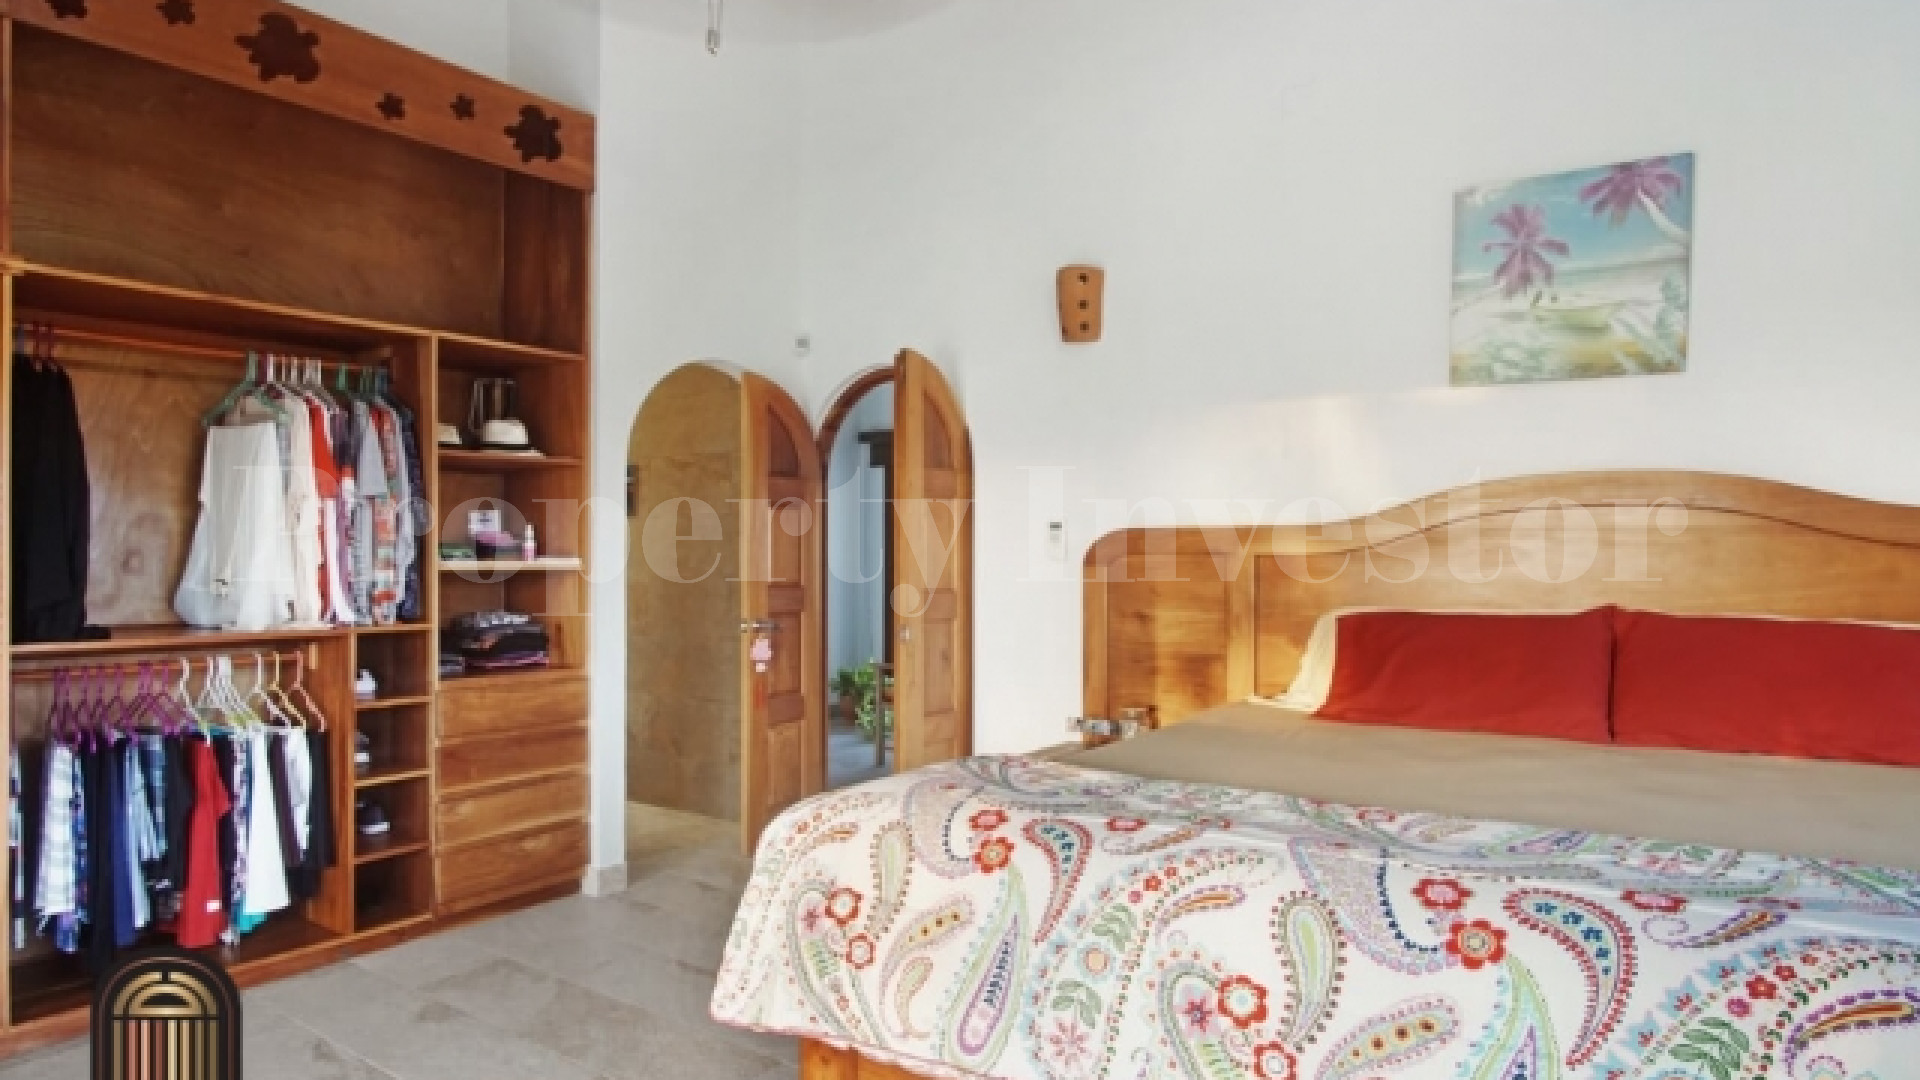 Красивый дом на 2 спальни на берегу моря с кристально прозрачным бассейном и домашним офисом в Педаси, Панама